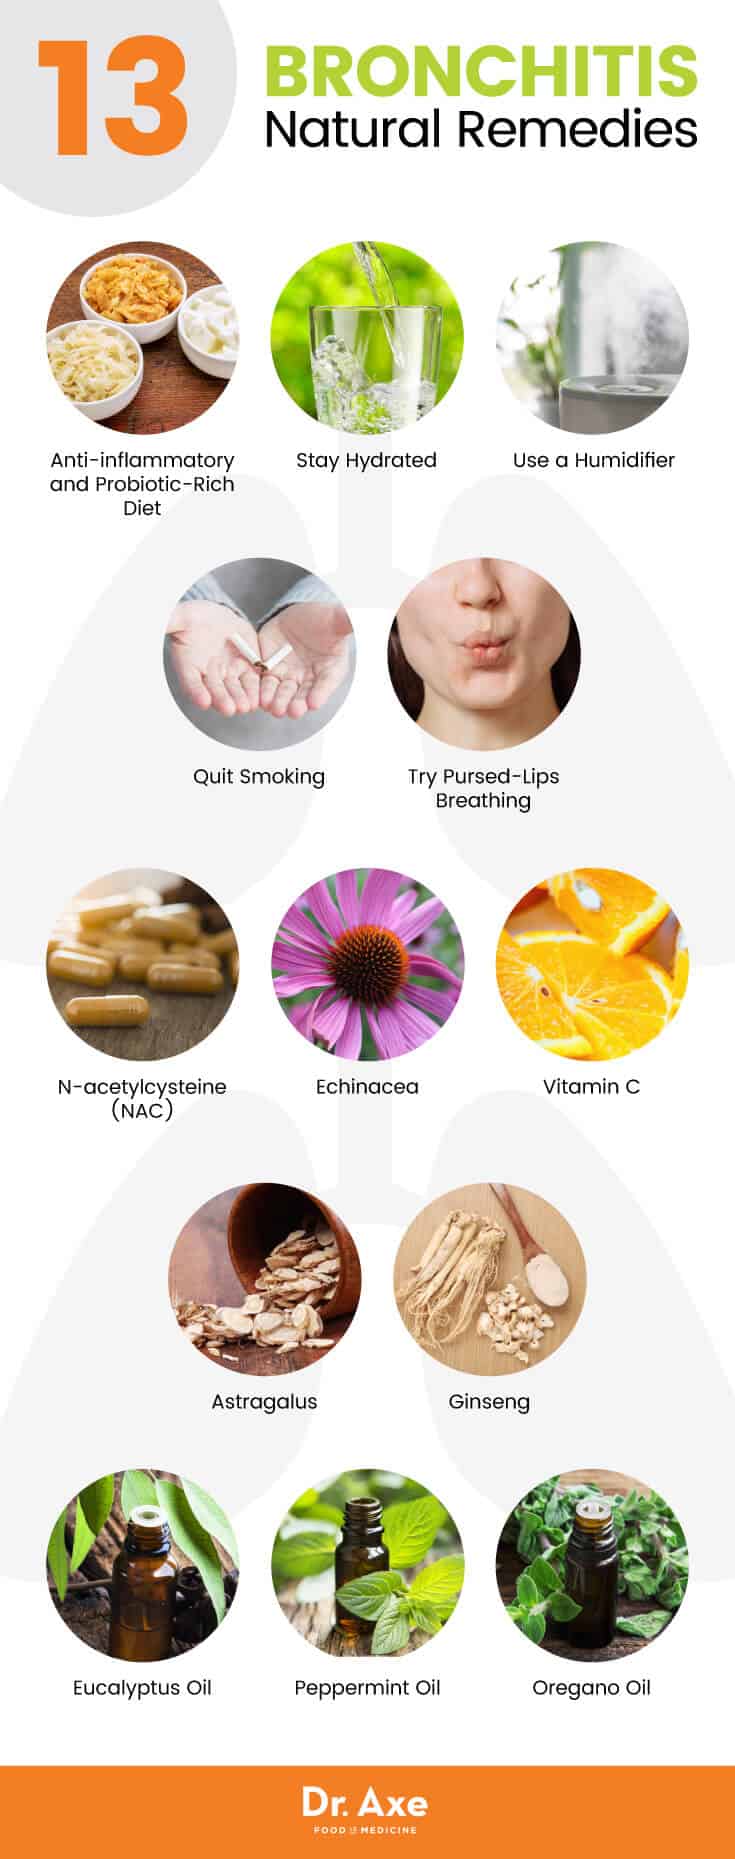 支气管炎症状、体征和13种自然疗法